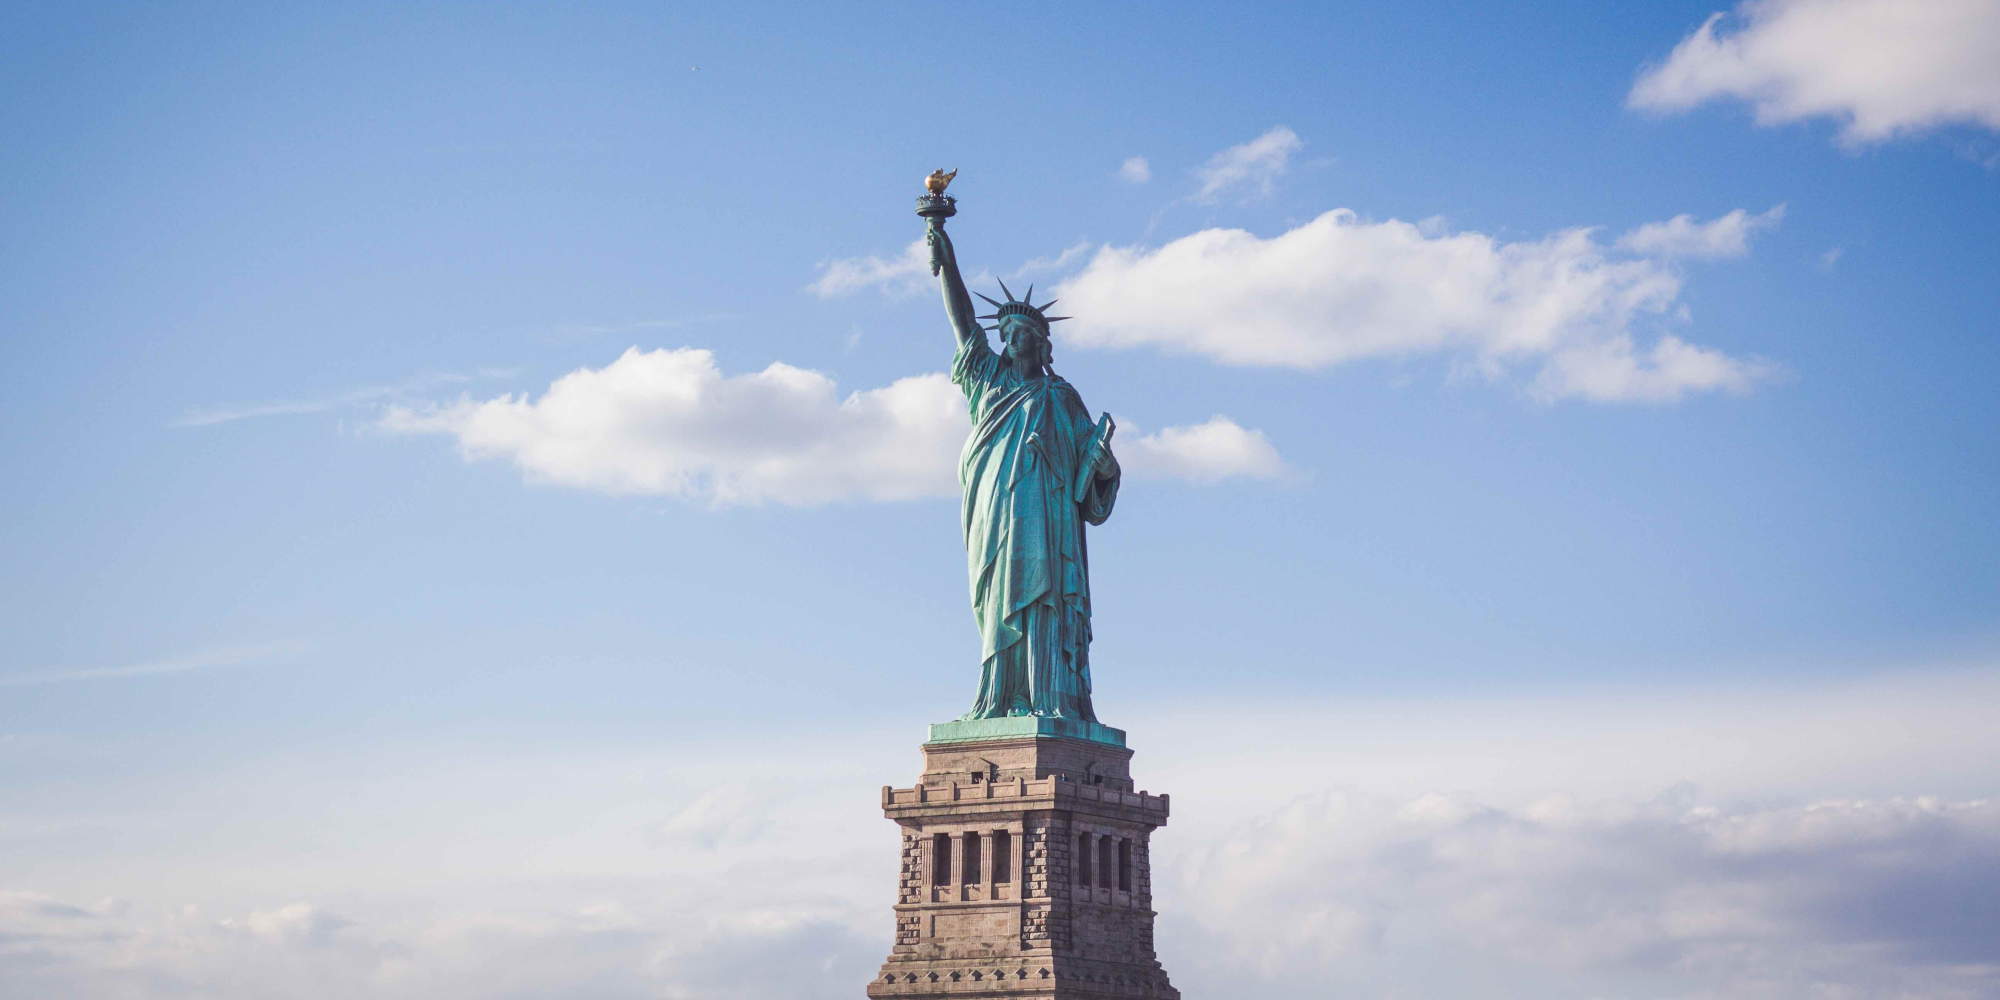 Ο Άγαλμα της Ελευθερίας στη Νέα Υόρκη